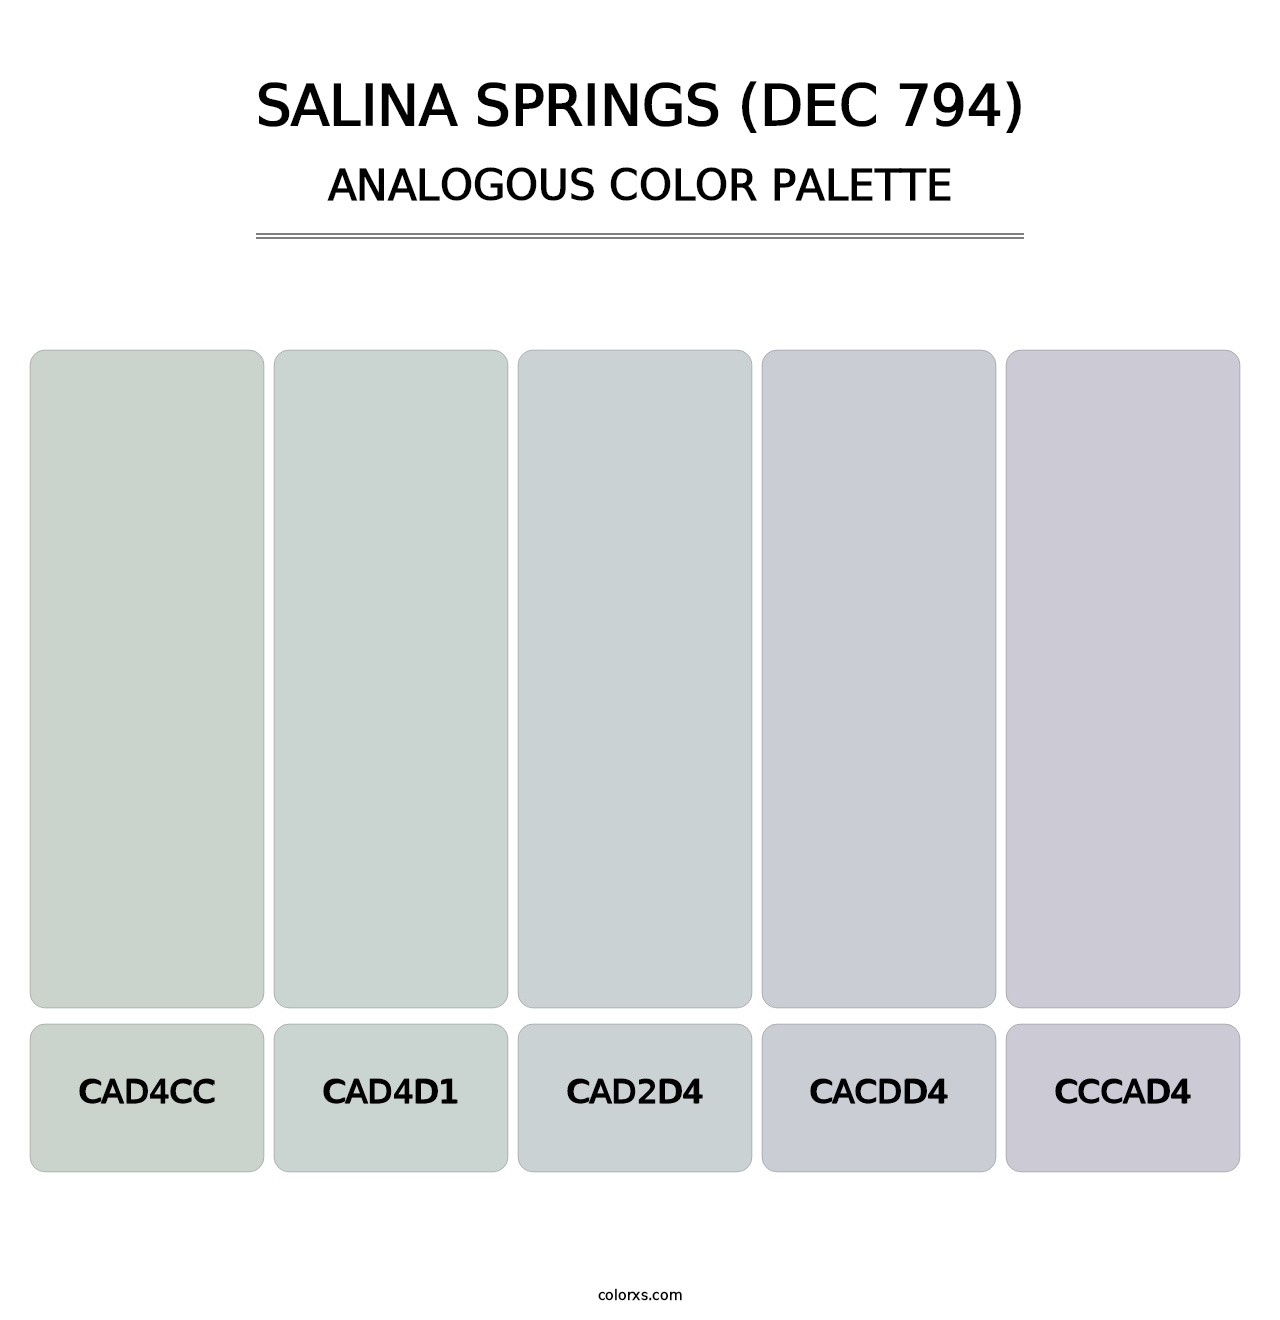 Salina Springs (DEC 794) - Analogous Color Palette